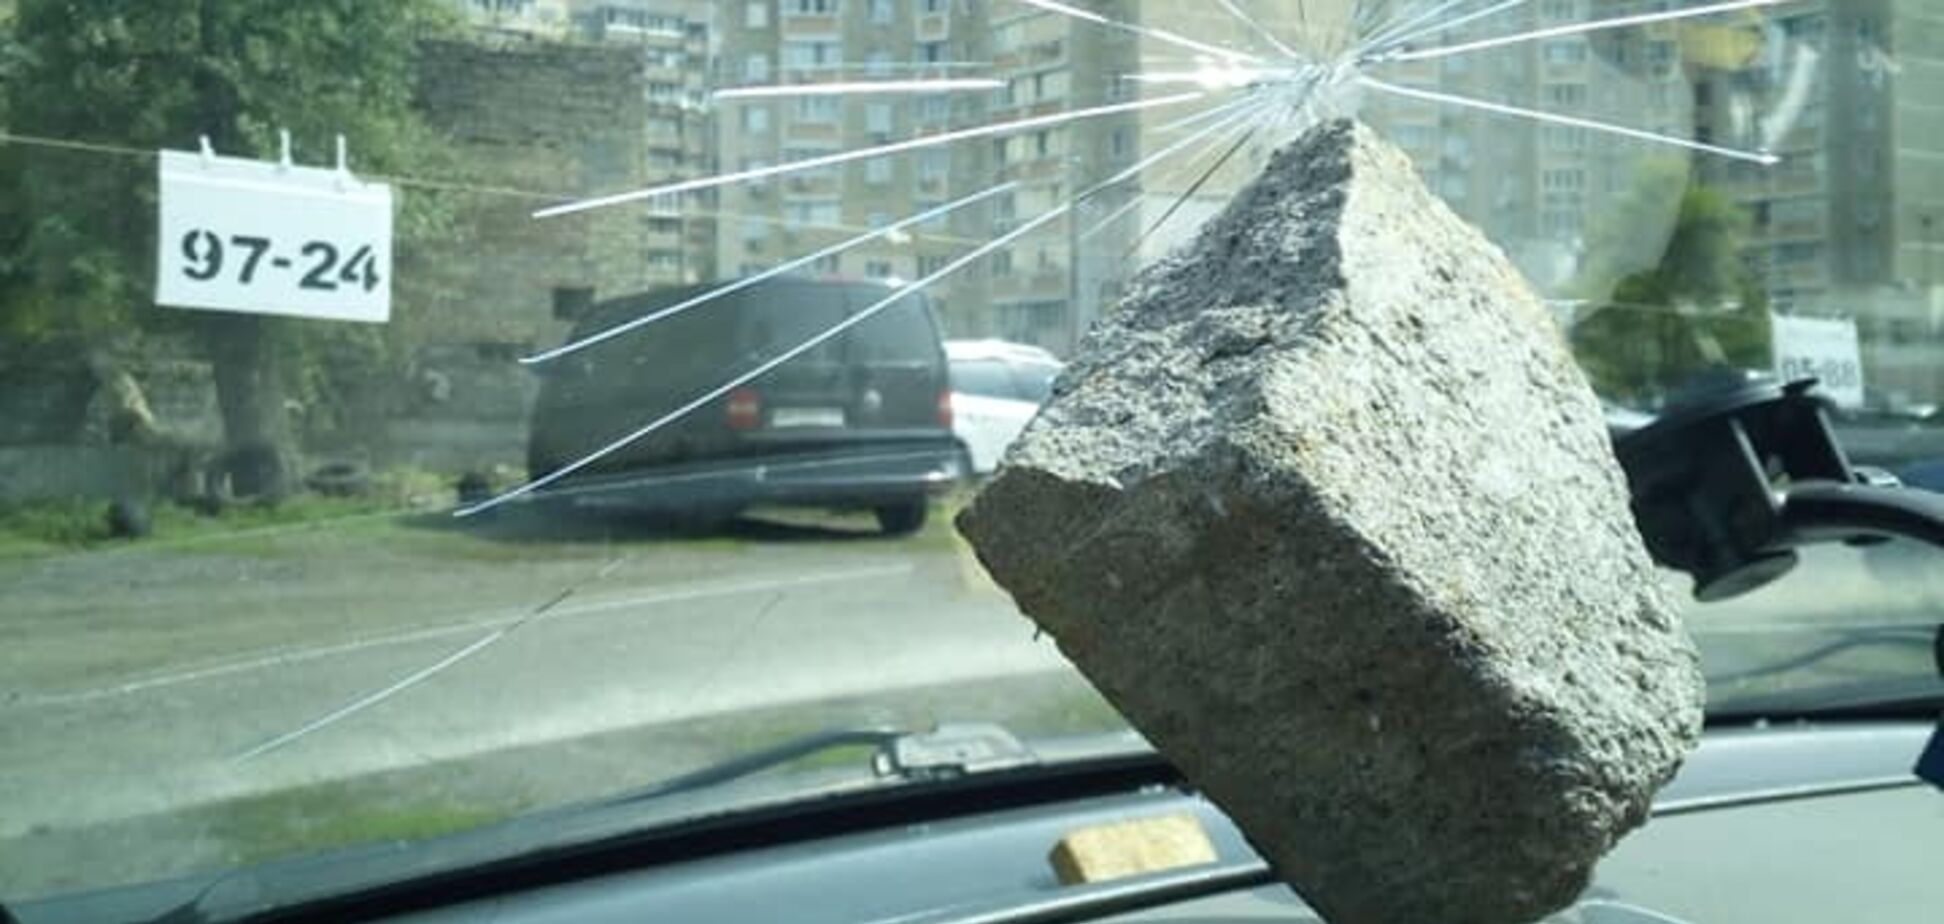 Камень пролетел насквозь: неизвестные разгромили авто на парковке Киева 